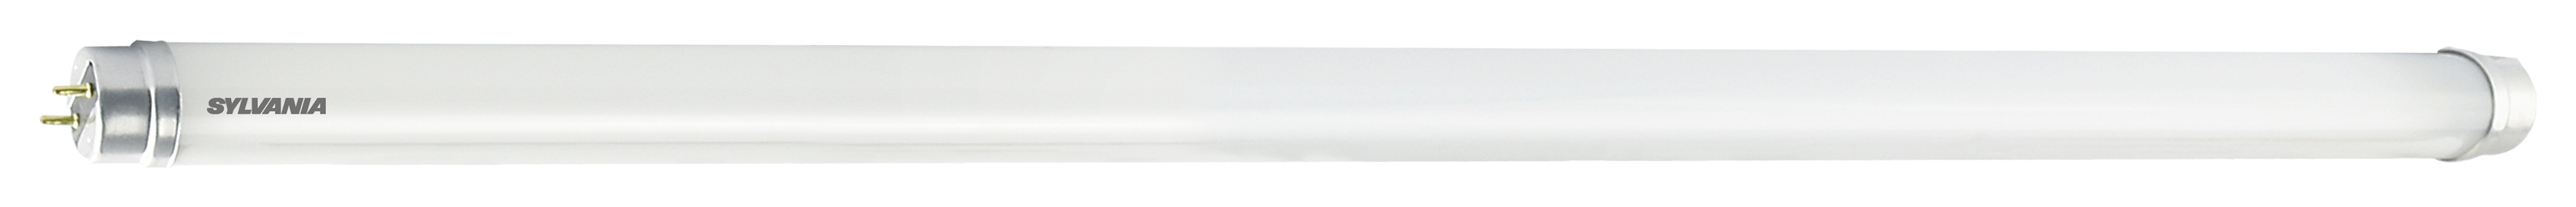 Image of Sylvania 2ft T8 Cool White LED Tube Light